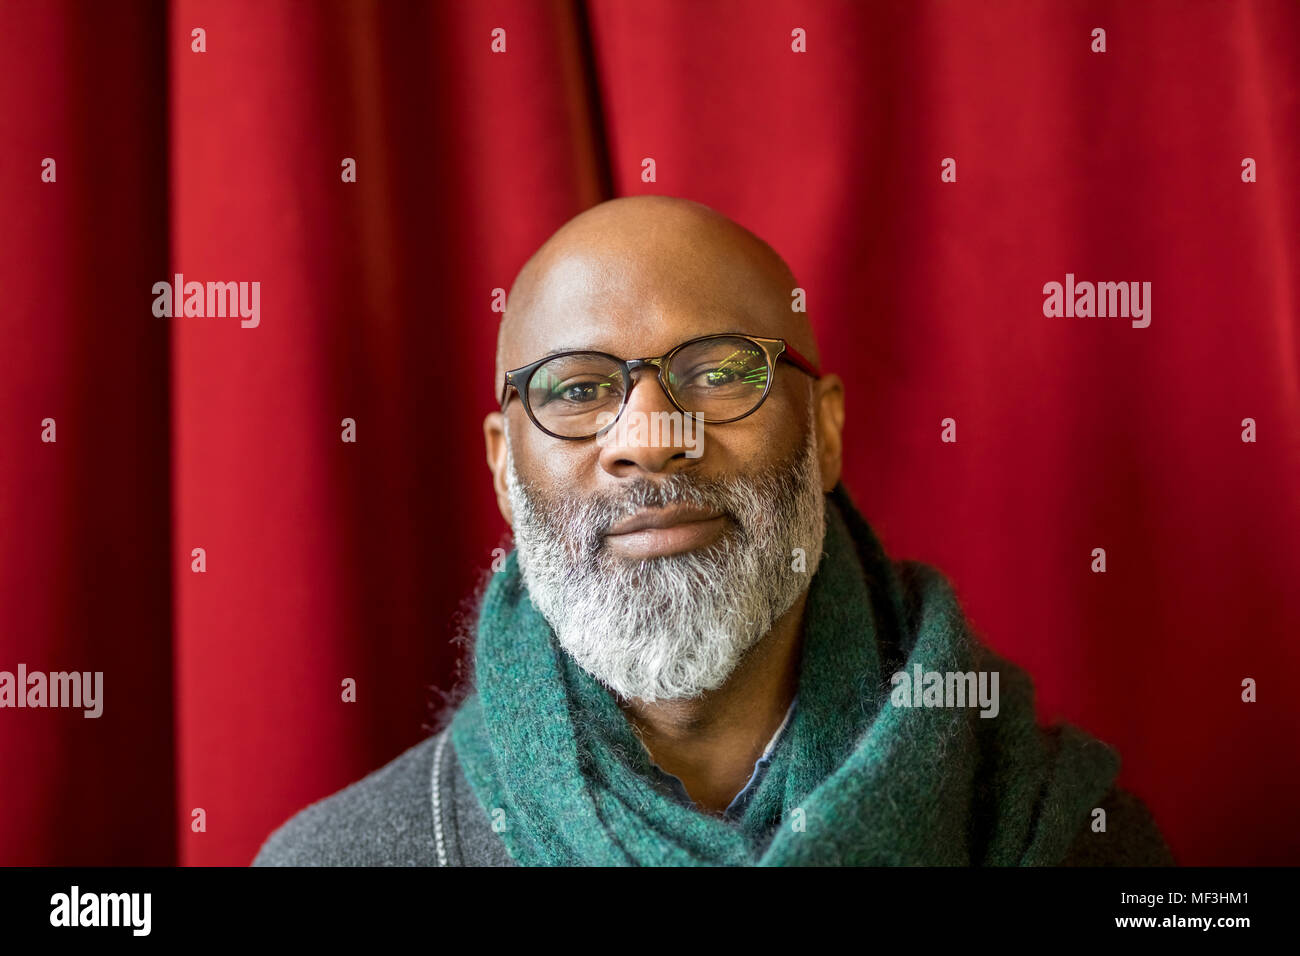 Portrait of smiling homme chauve avec barbe complète portant des lunettes Banque D'Images